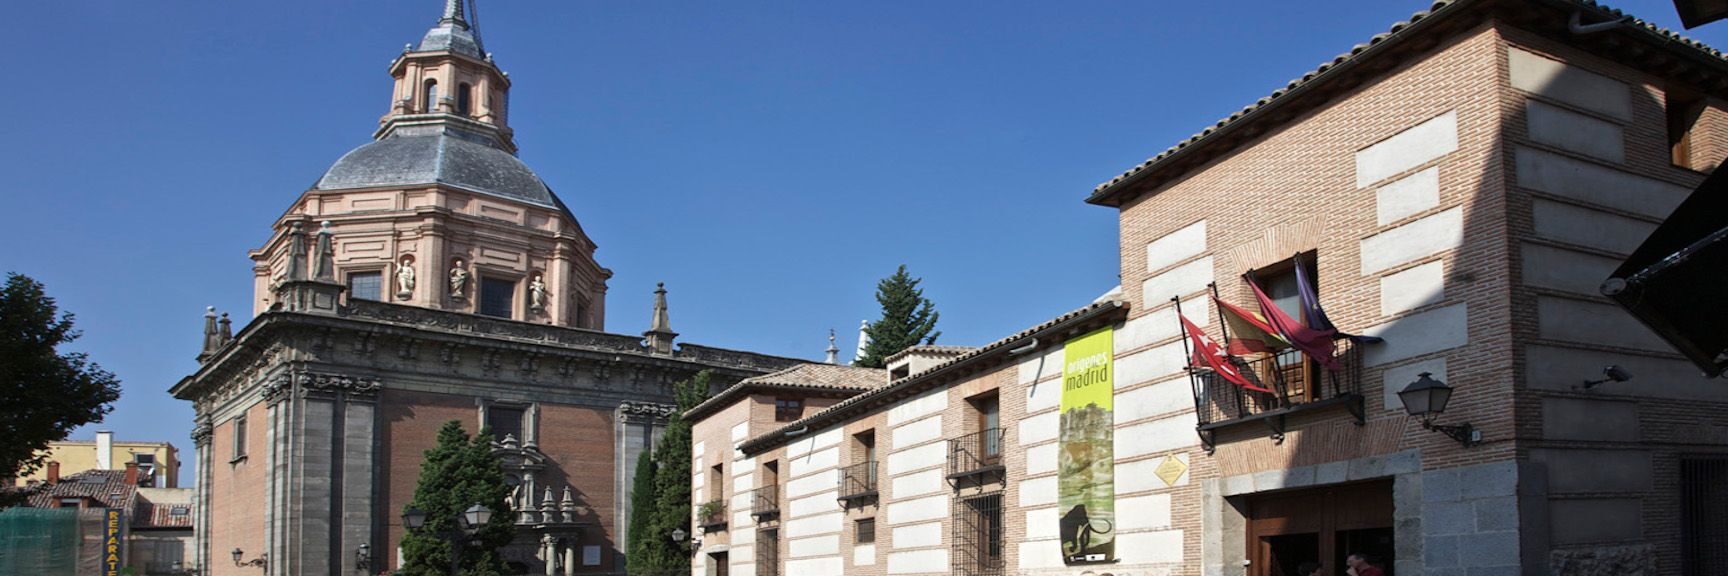 MUSEO DE SAN ISIDRO. LOS ORÍGENES DE MADRID		Madrid	Madrid	Museo